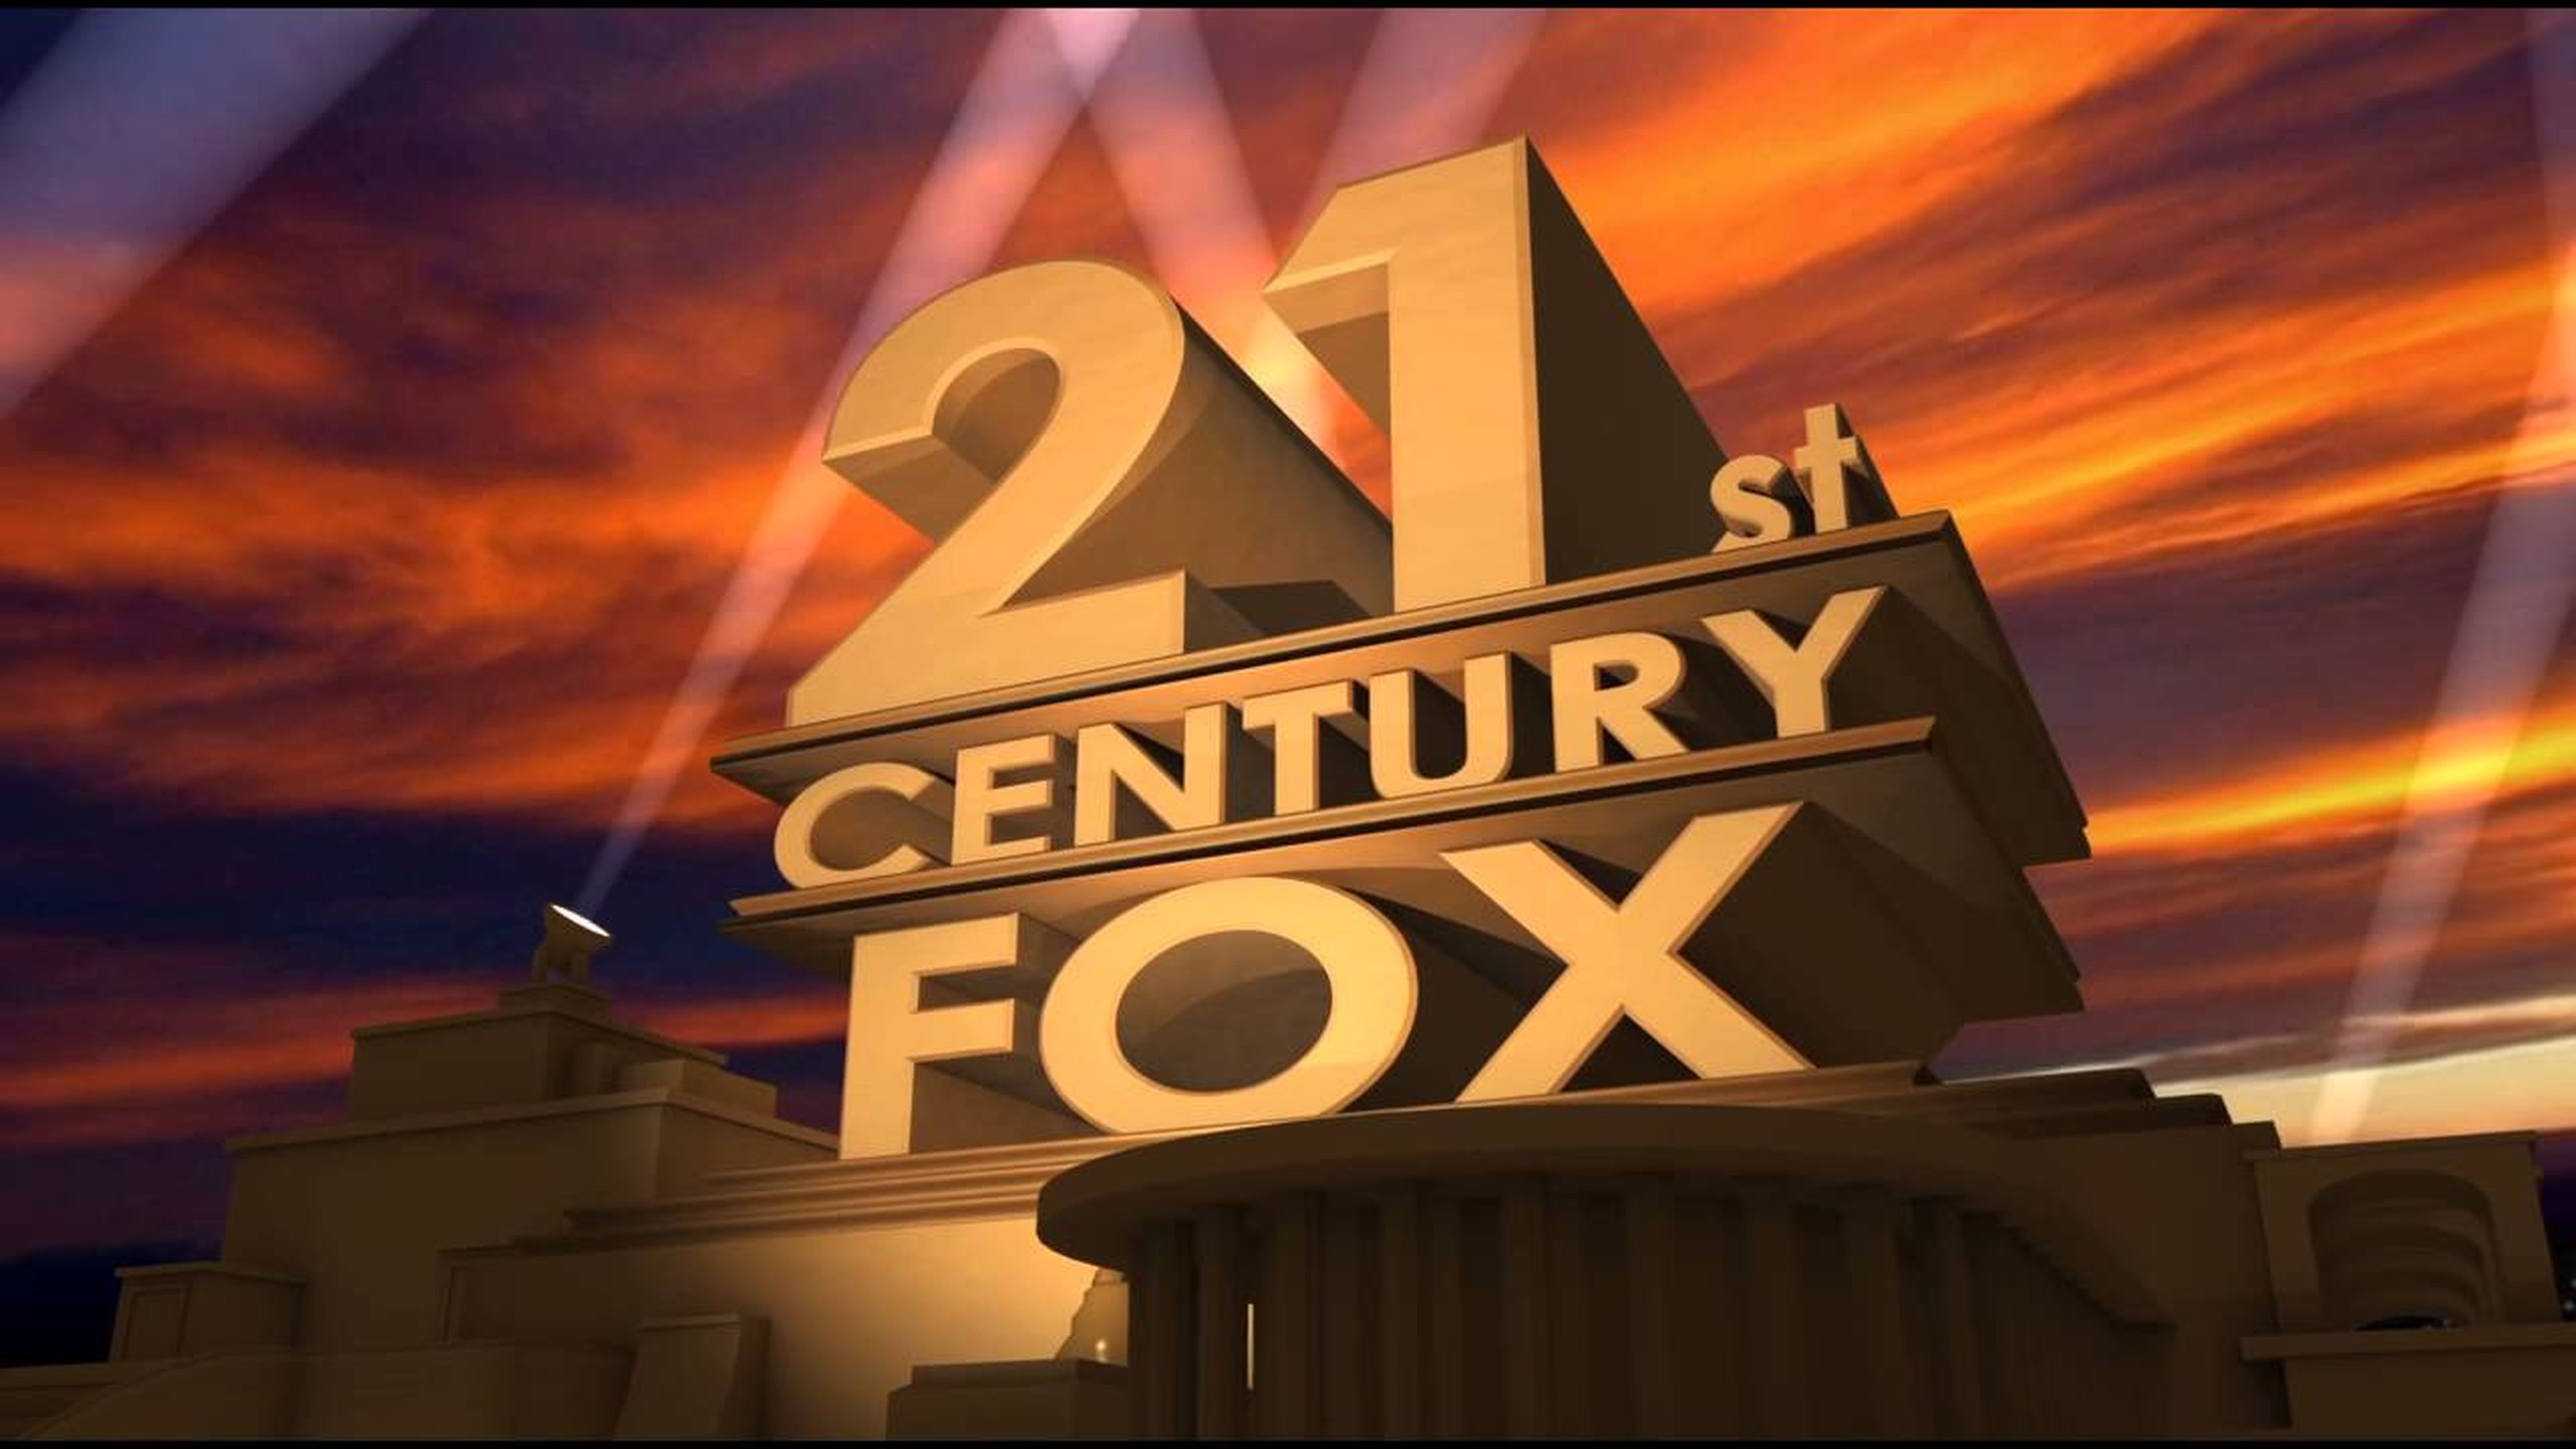 Видео поздравление 20 лет. Walt Disney Fox 21 Century. 21st Century Fox проекты. С юбилеем 20 век Фокс. Заставка с юбилеем.